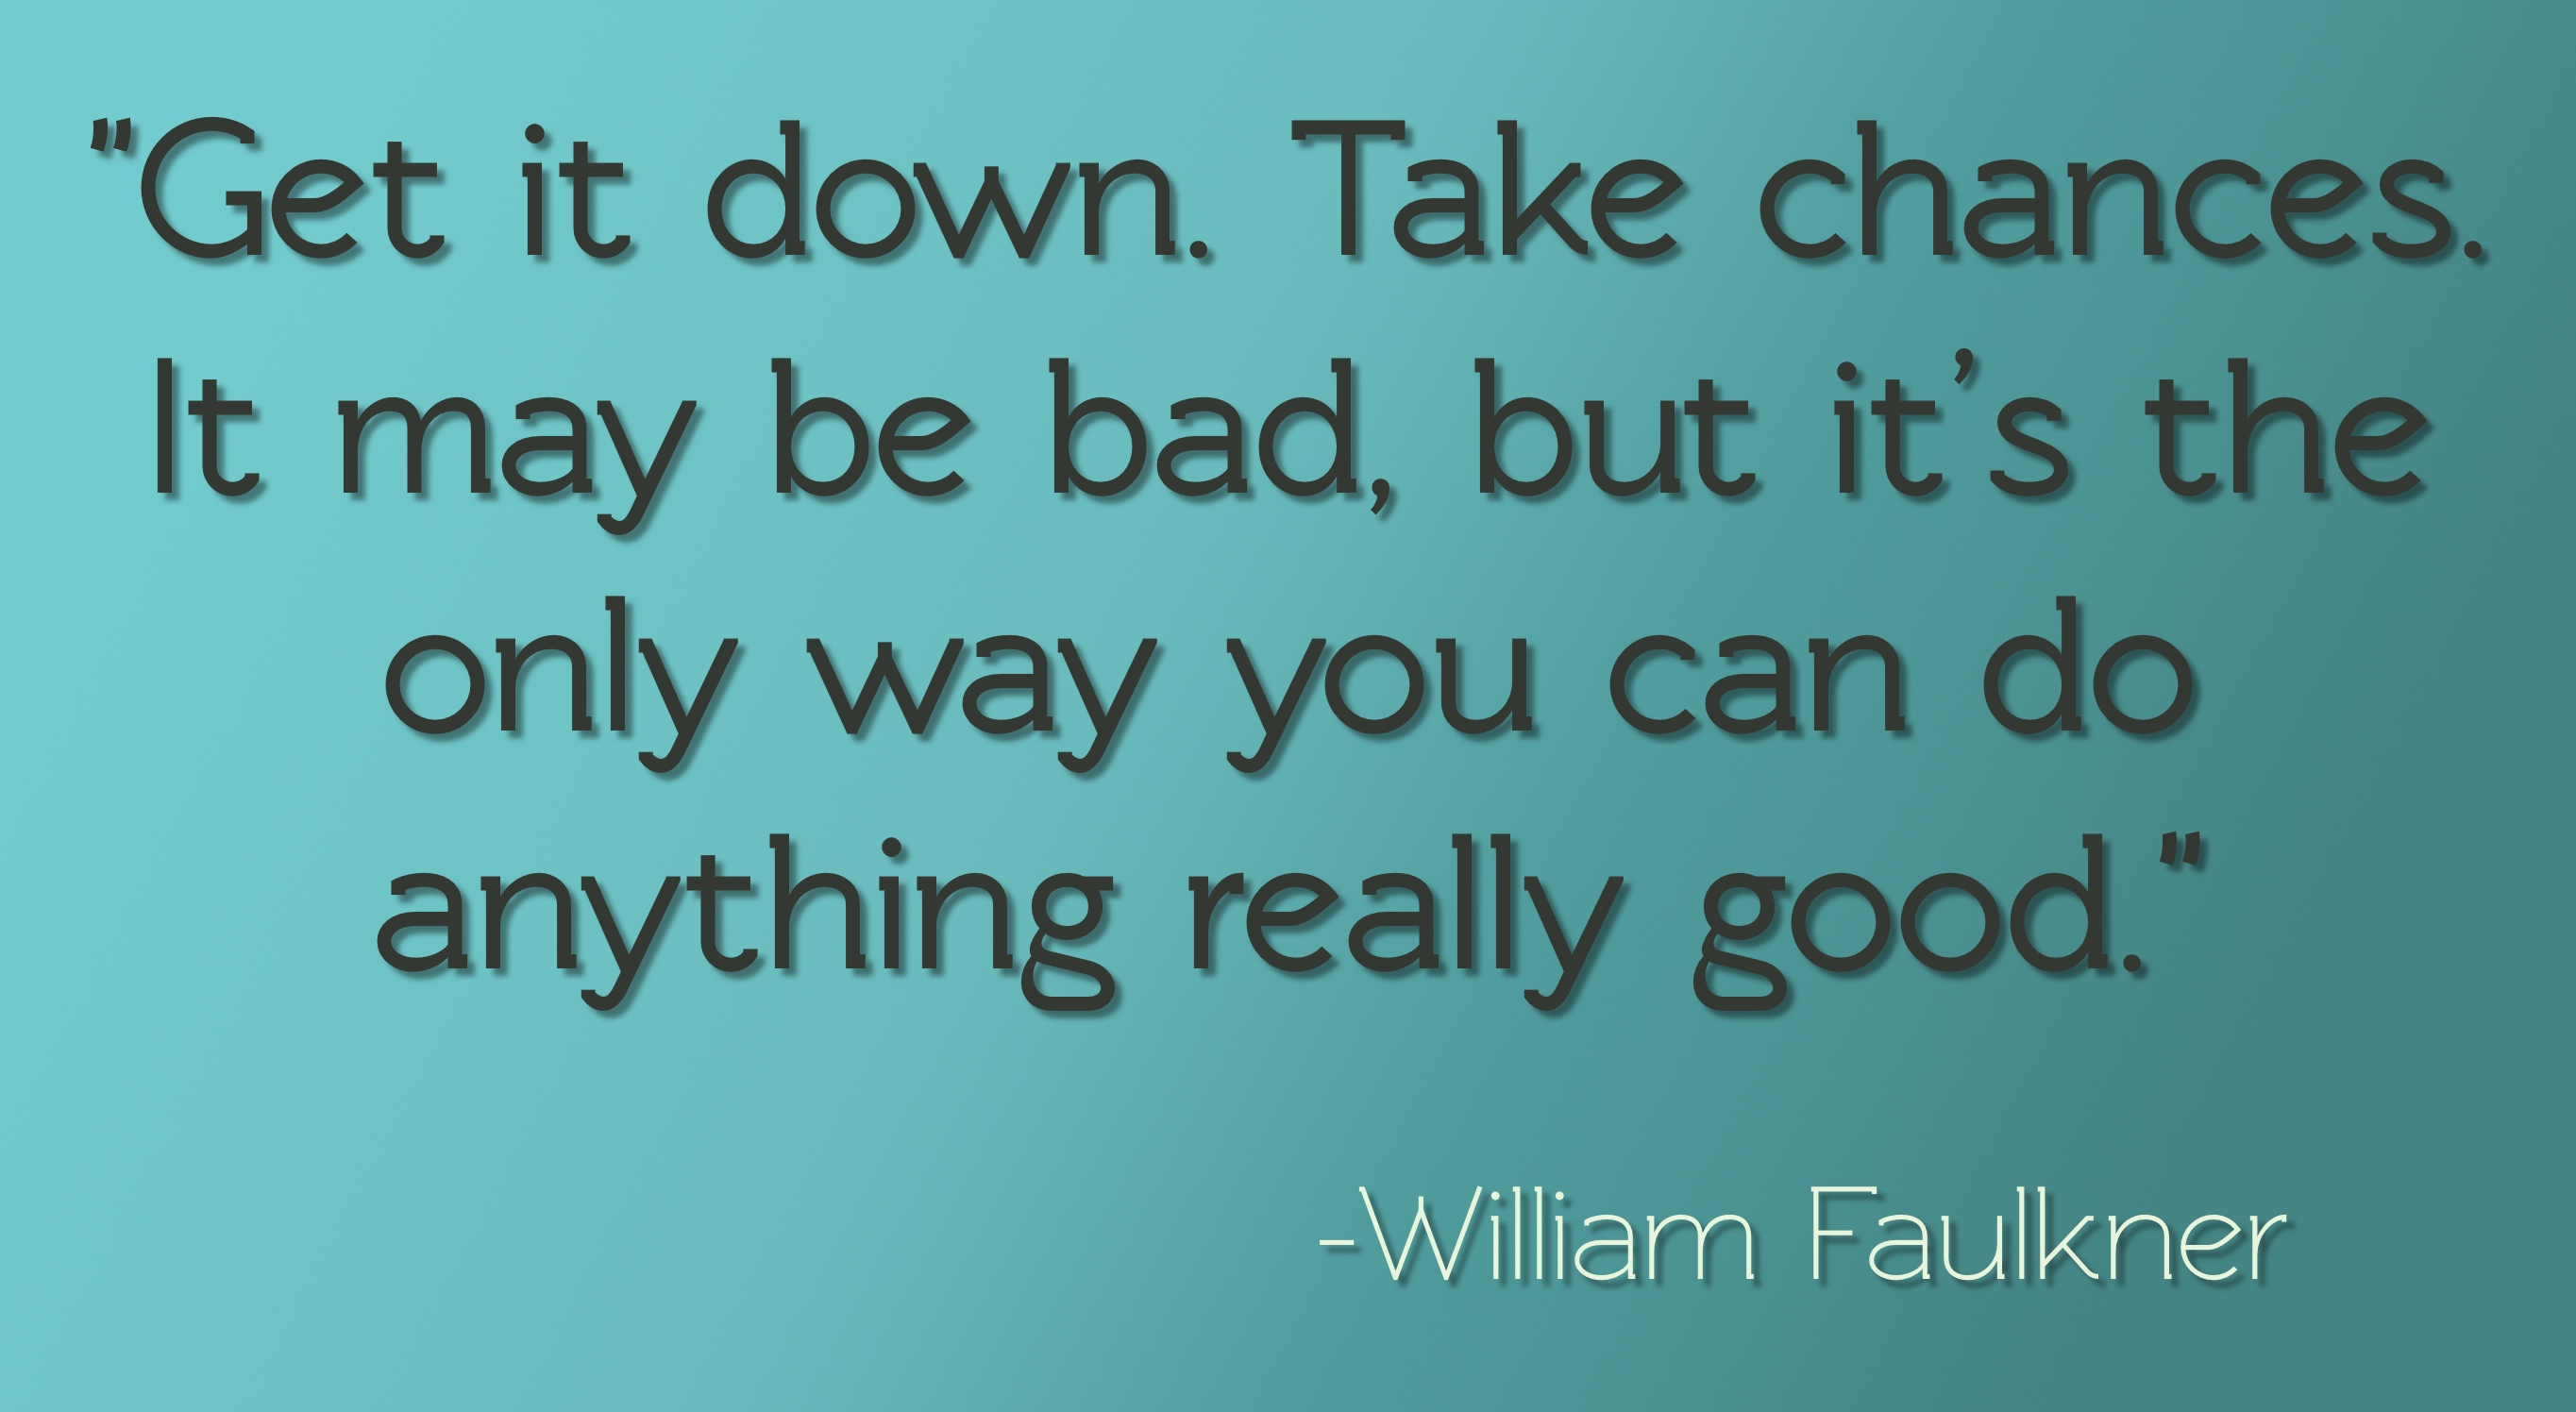 William Faulkner Quote